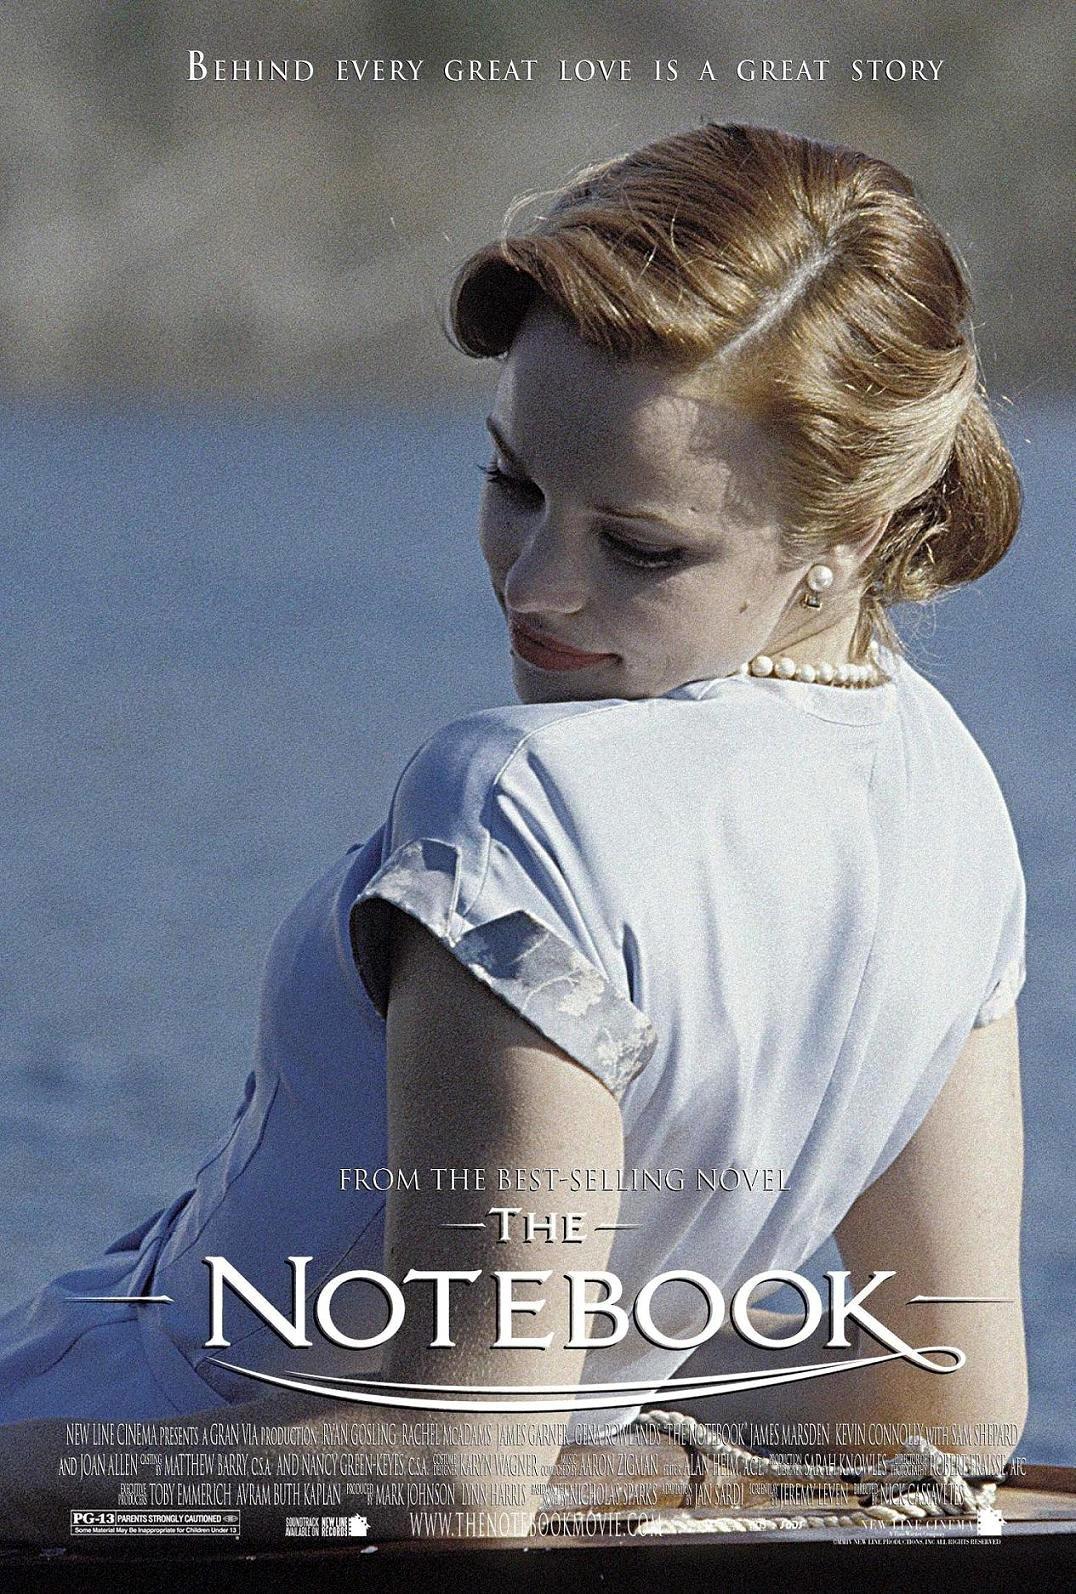 Дневник памяти полностью. Дневник памяти (the Notebook) 2004. Элли Гамильтон дневник памяти. Рэйчел Макадамс Элли Гамильтон. Рэйчел Макадамс the Notebook.